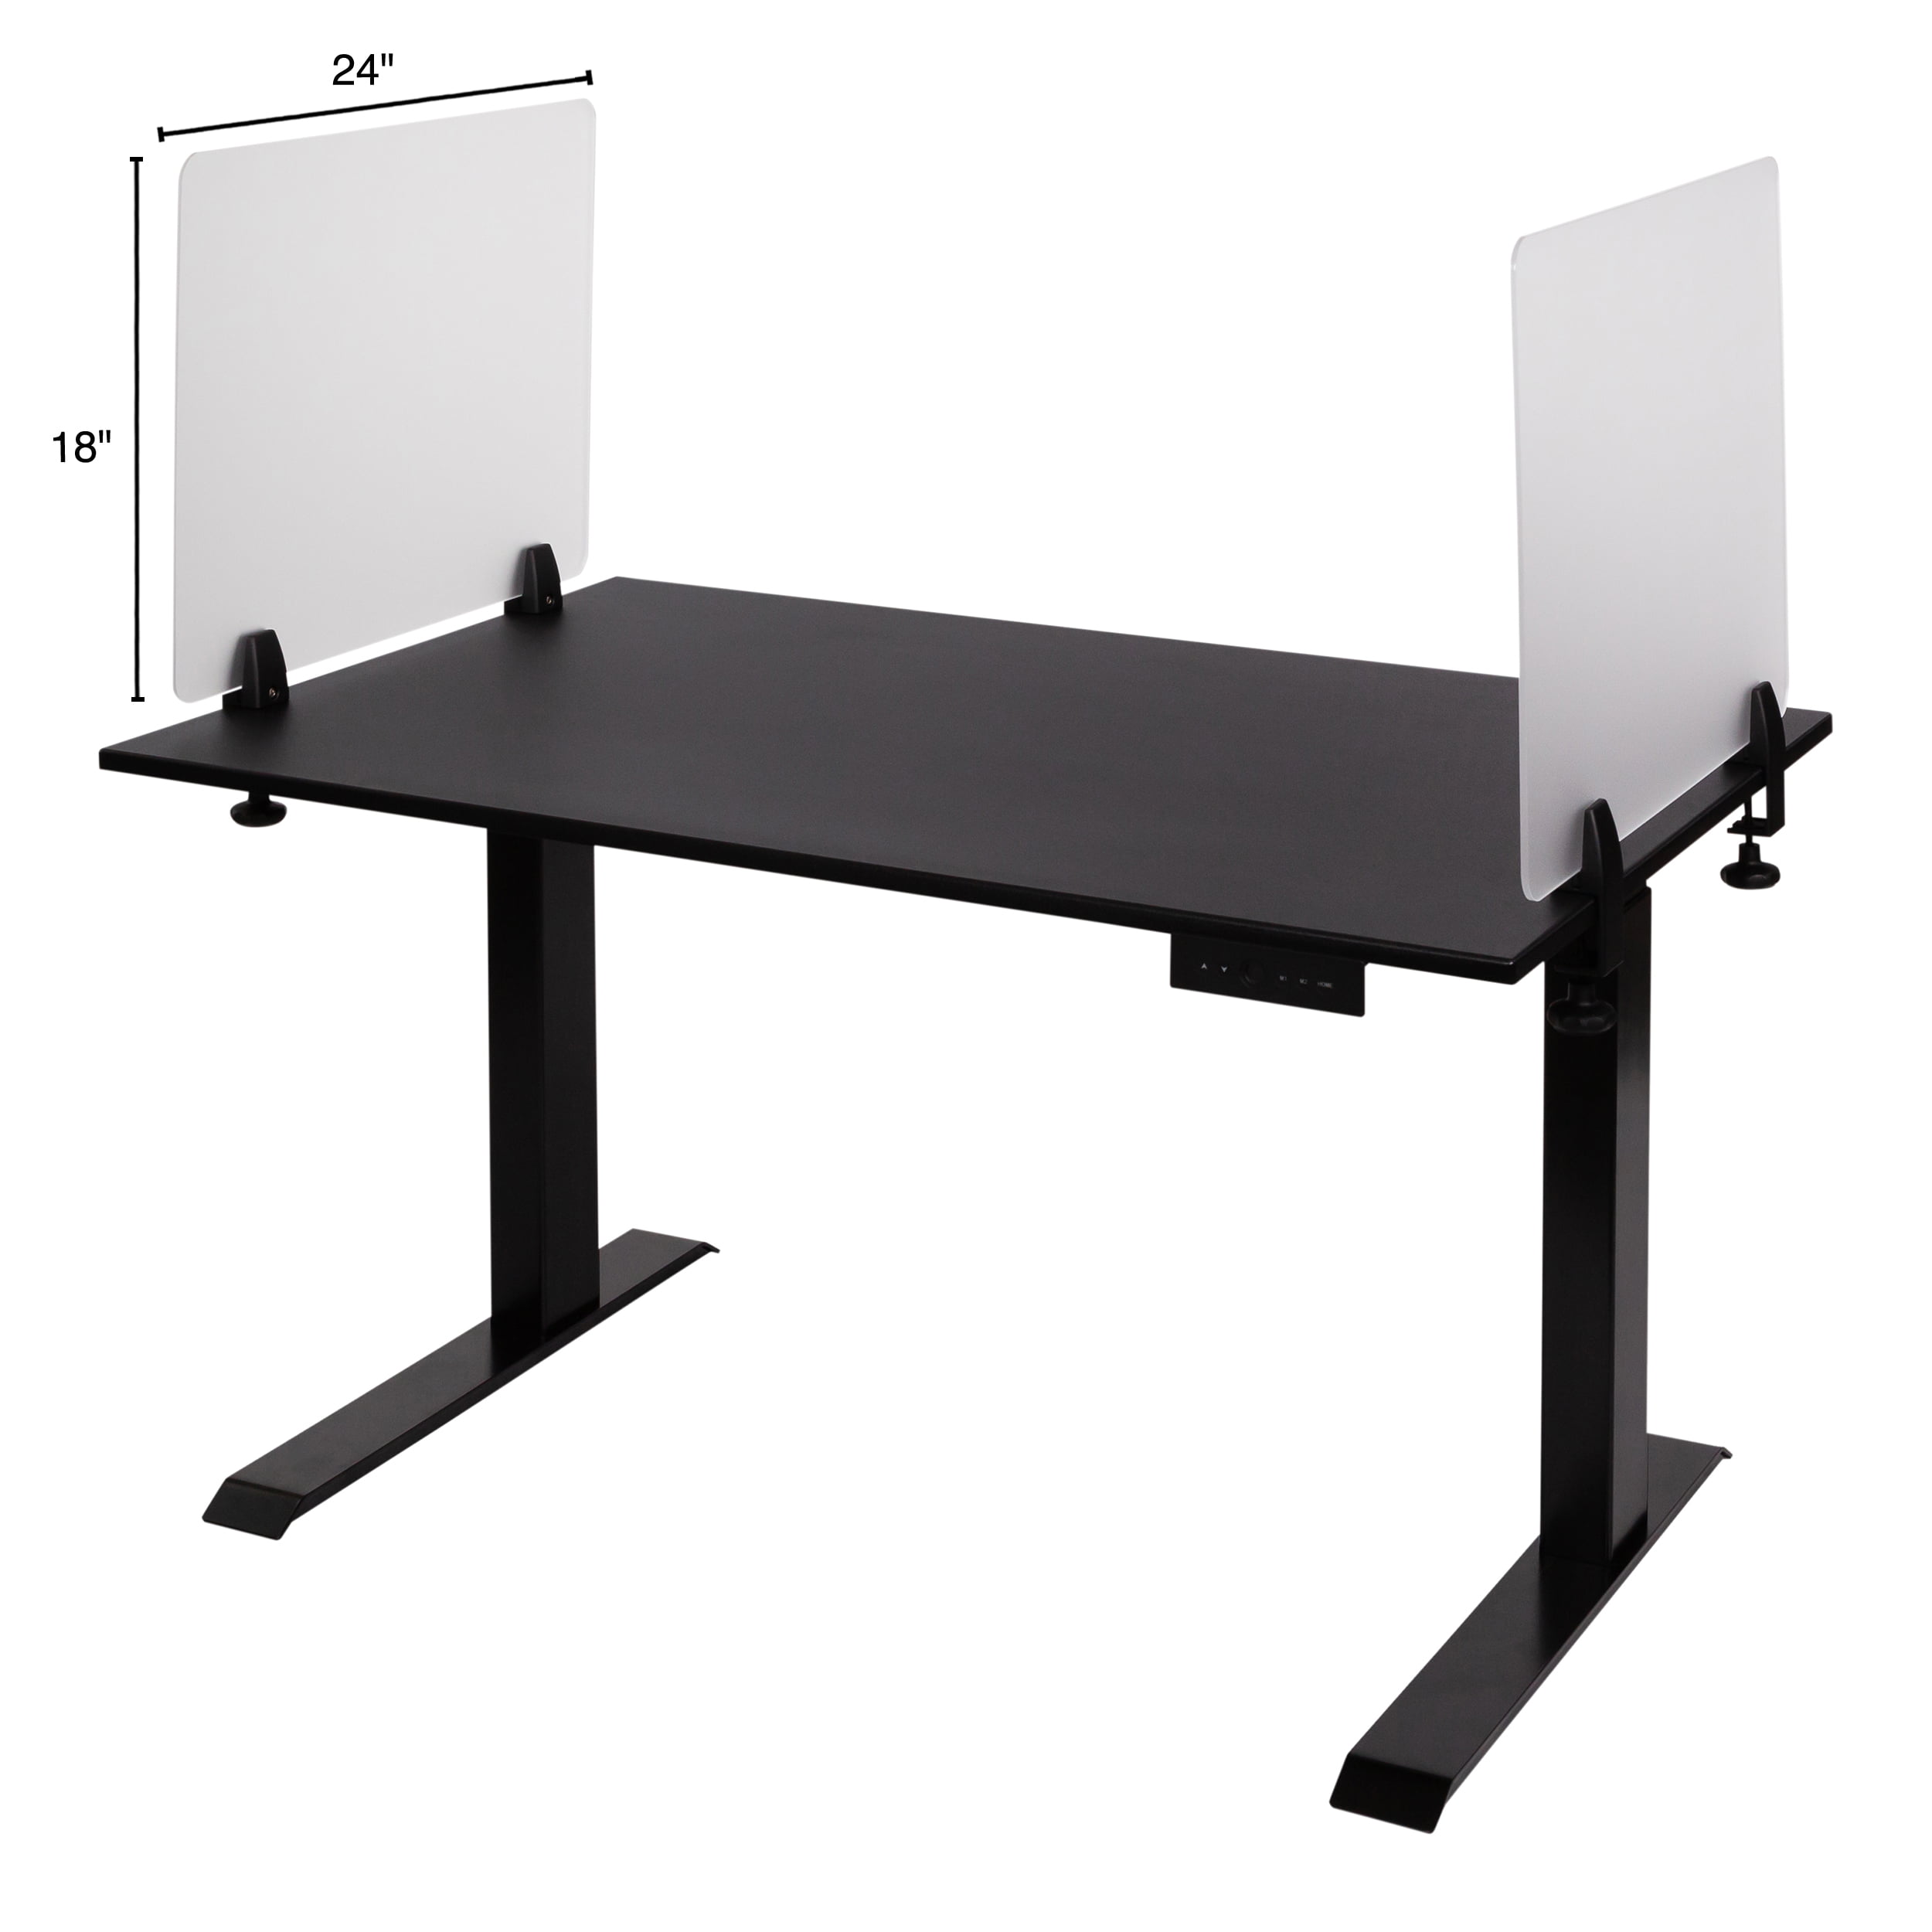 U Type Privacy Divider Pre-Lit Desk Divider Freestanding Sneeze Guard for Desk,Counter and Restaurant Desk Divider-A 